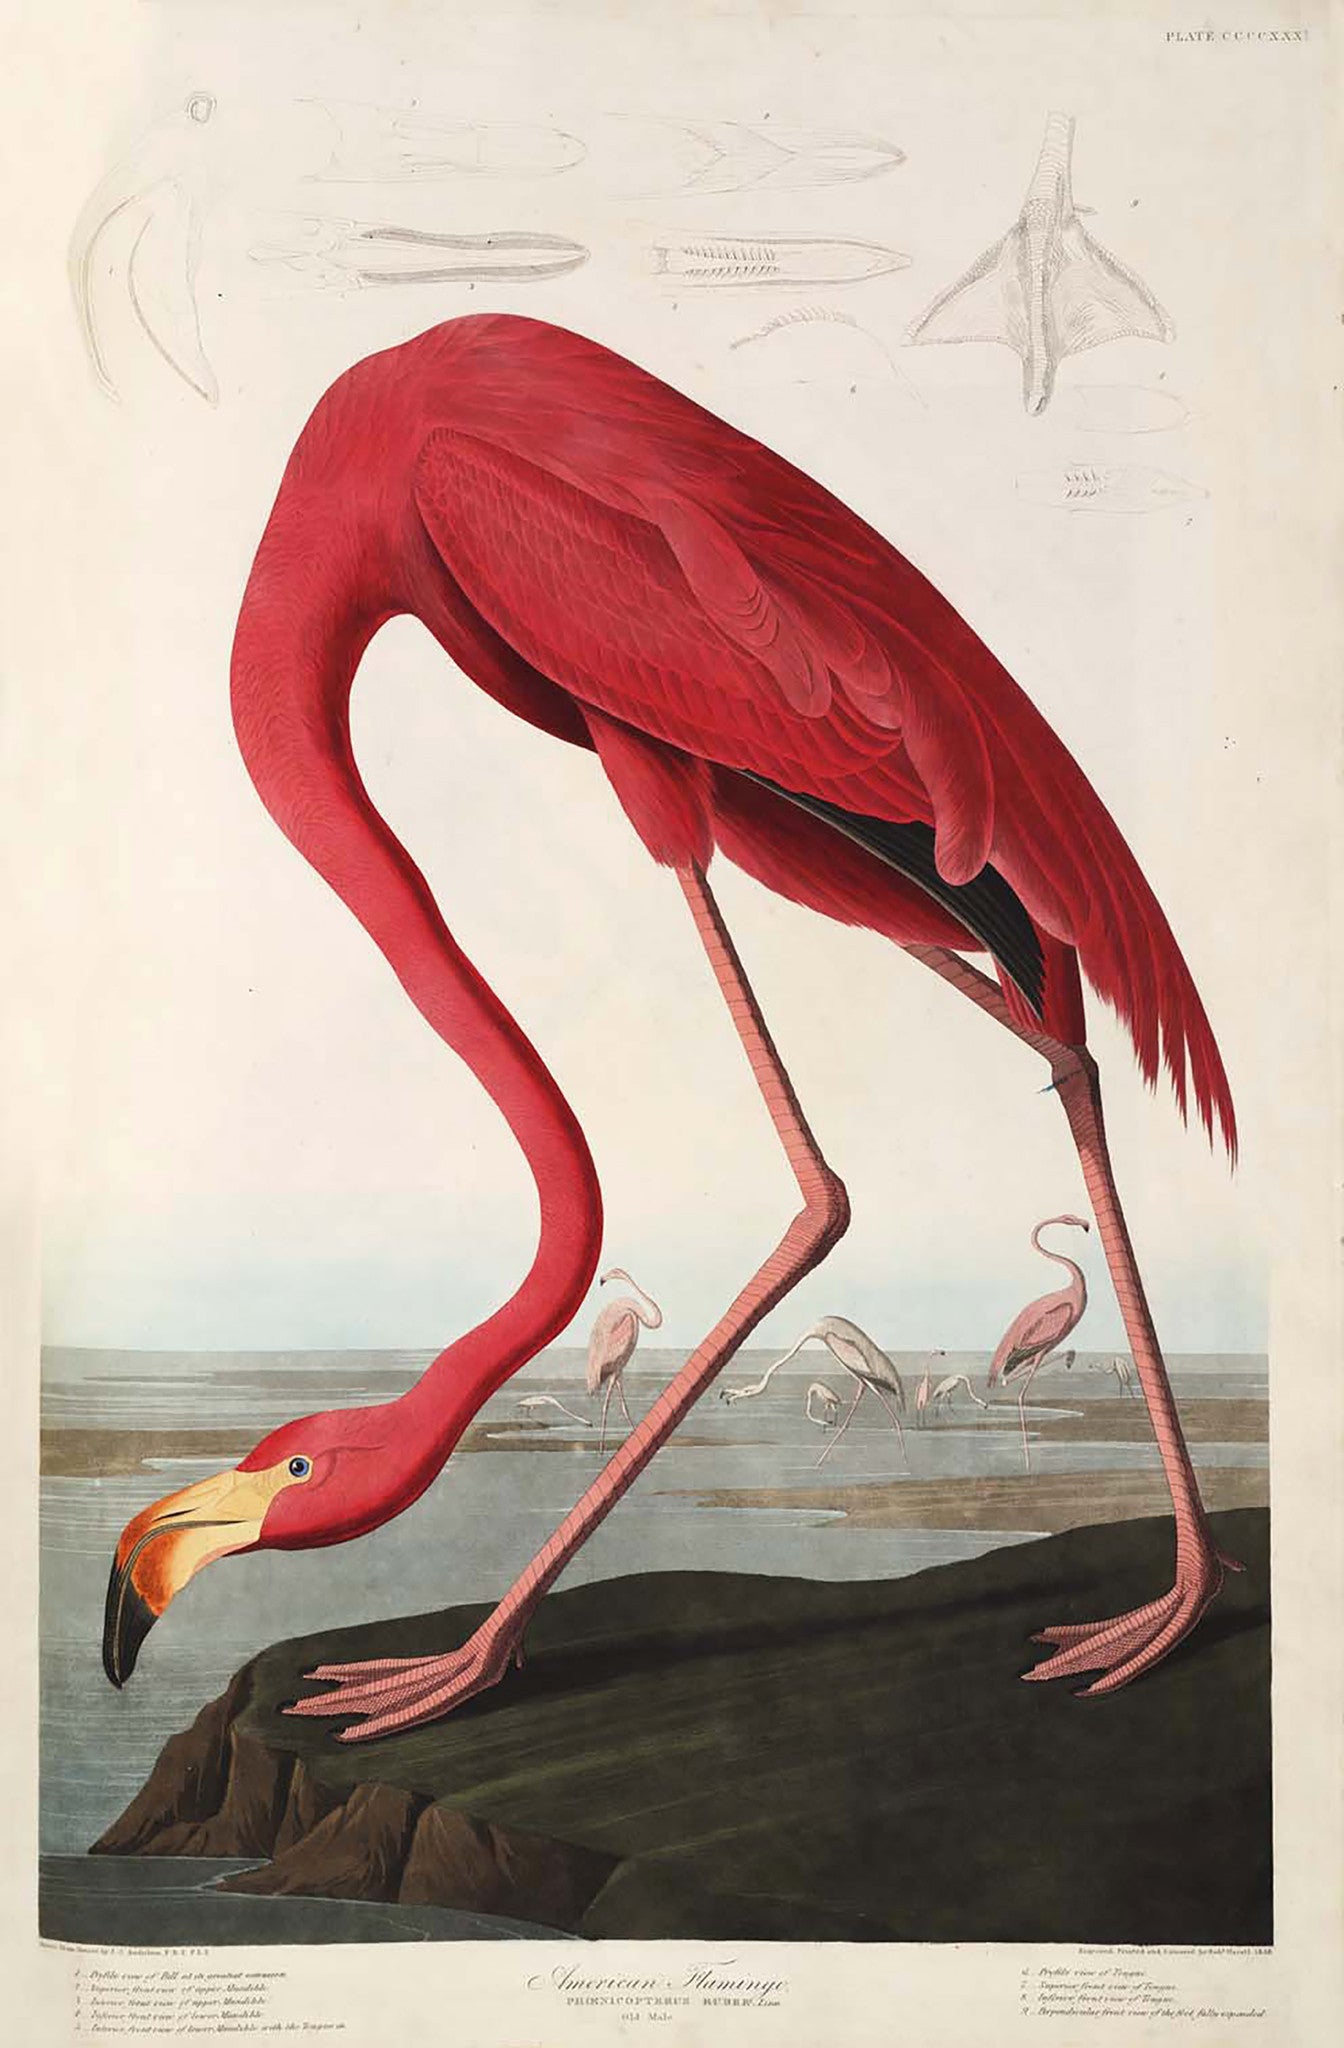 Print "American Flamingo" by Audubon. Antiquariaat de Vries & de Vries.